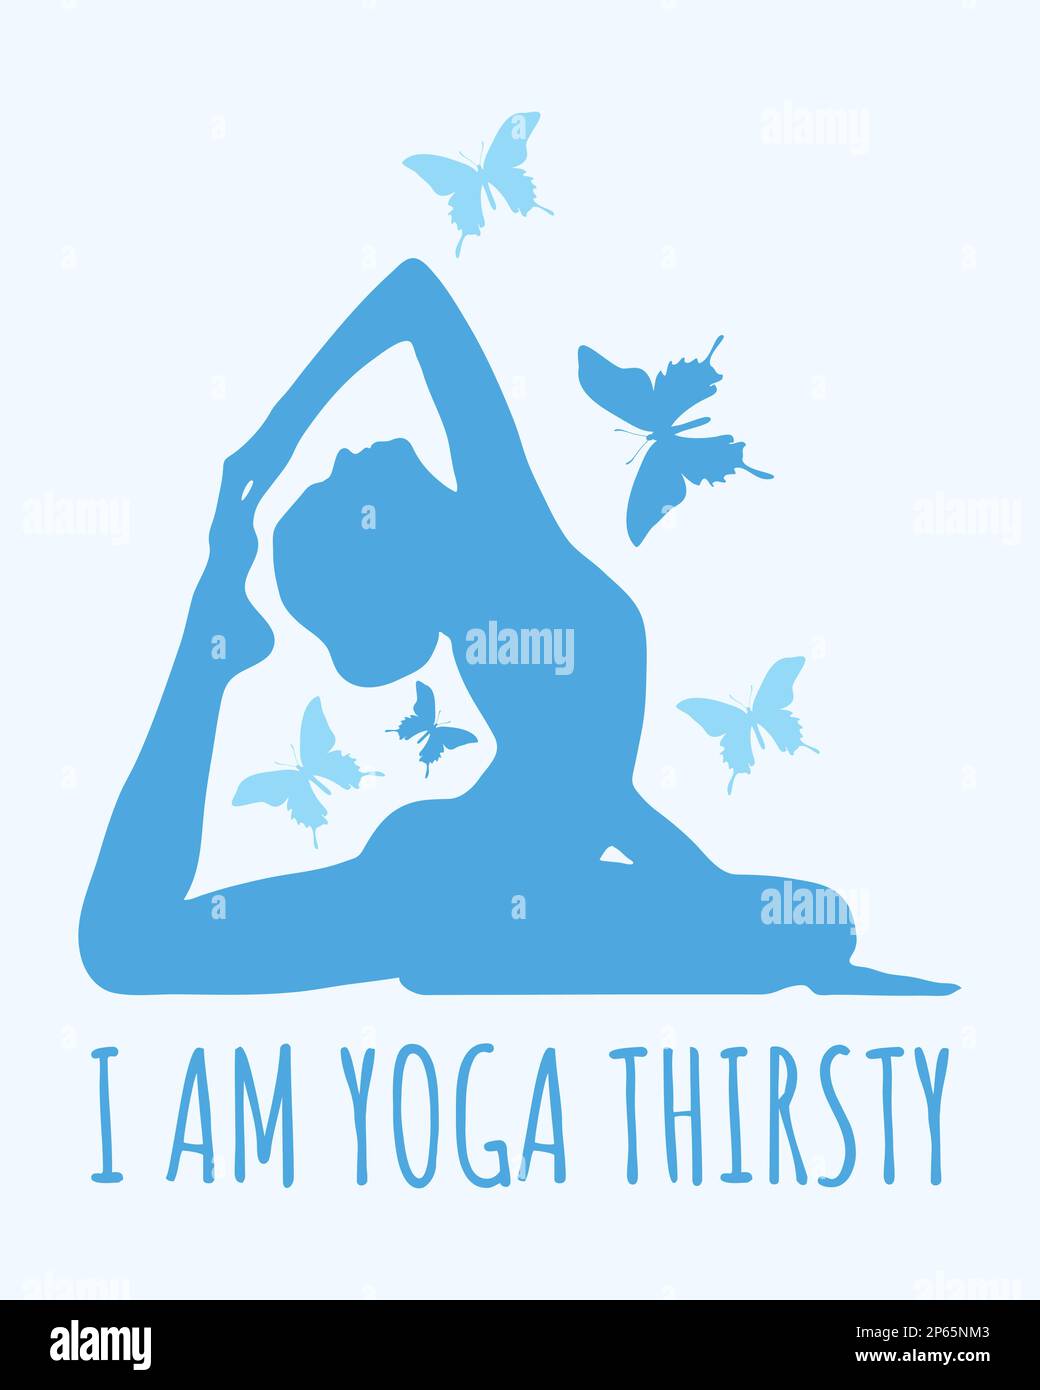 Ich habe Yoga-Durst. Yoga-Zitat mit Frauen-Yoga-Pose und Schmetterlingssilhouette. Stock Vektor